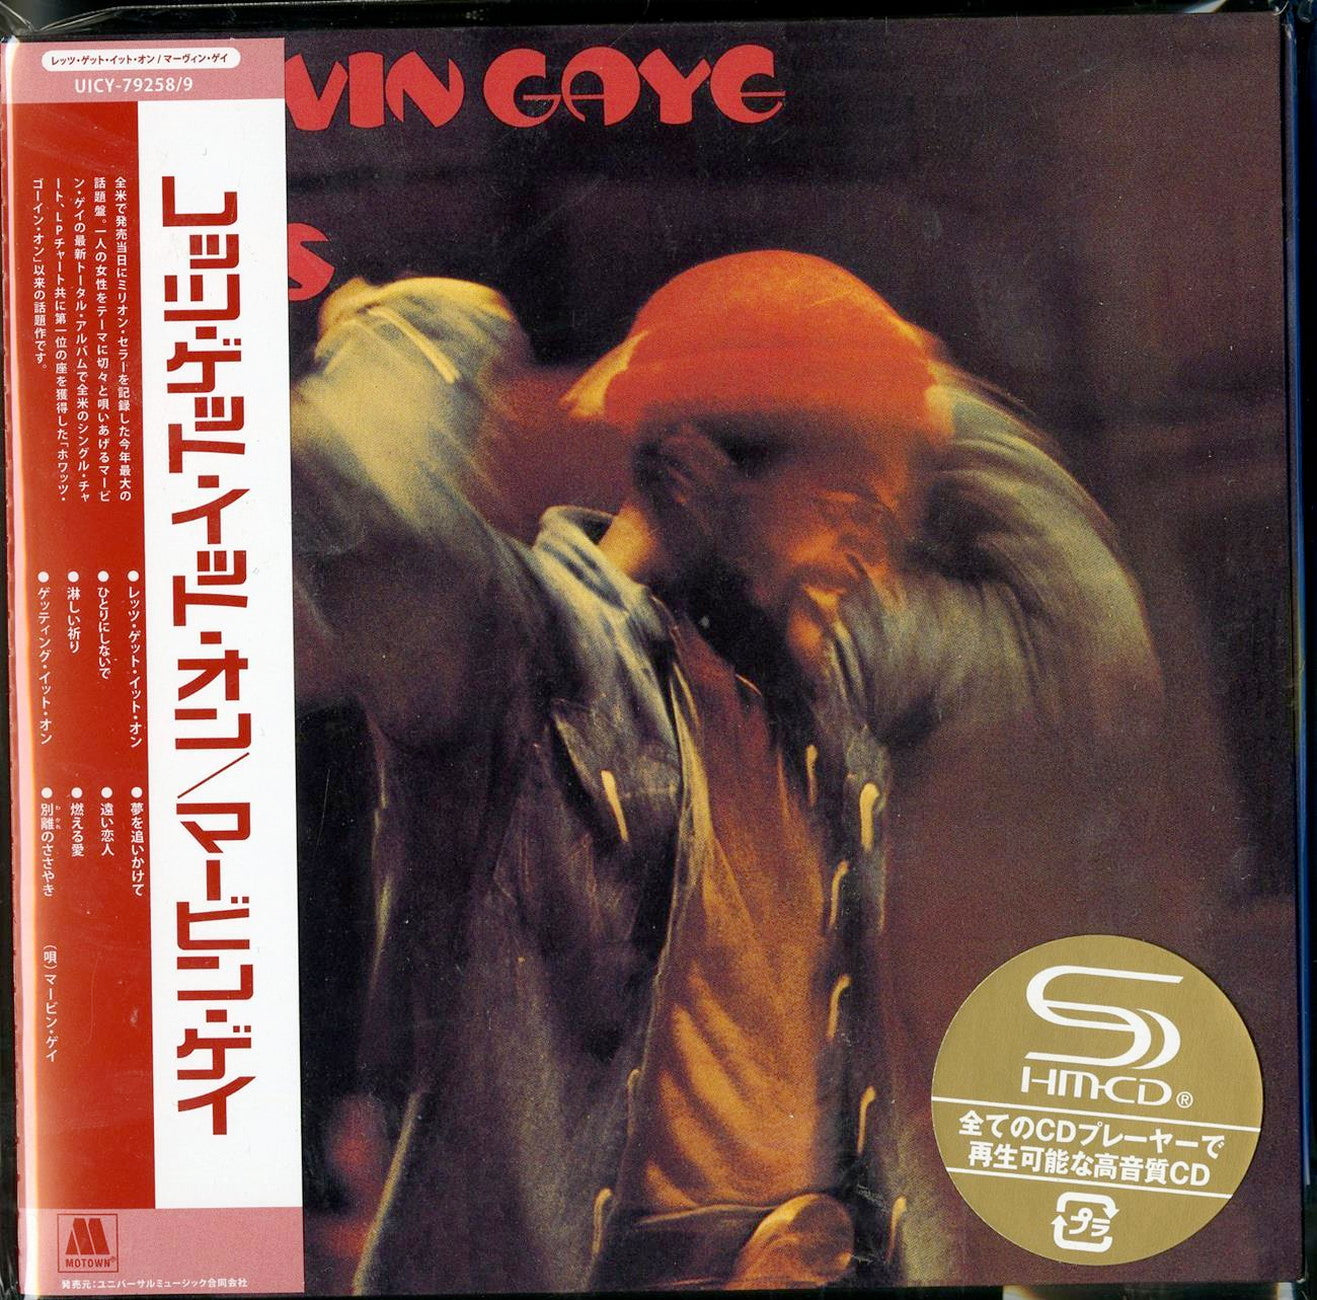 Marvin Gaye - Let'S Get It On - Japan  2 Mini LP SHM-CD Bonus Track Limited Edition